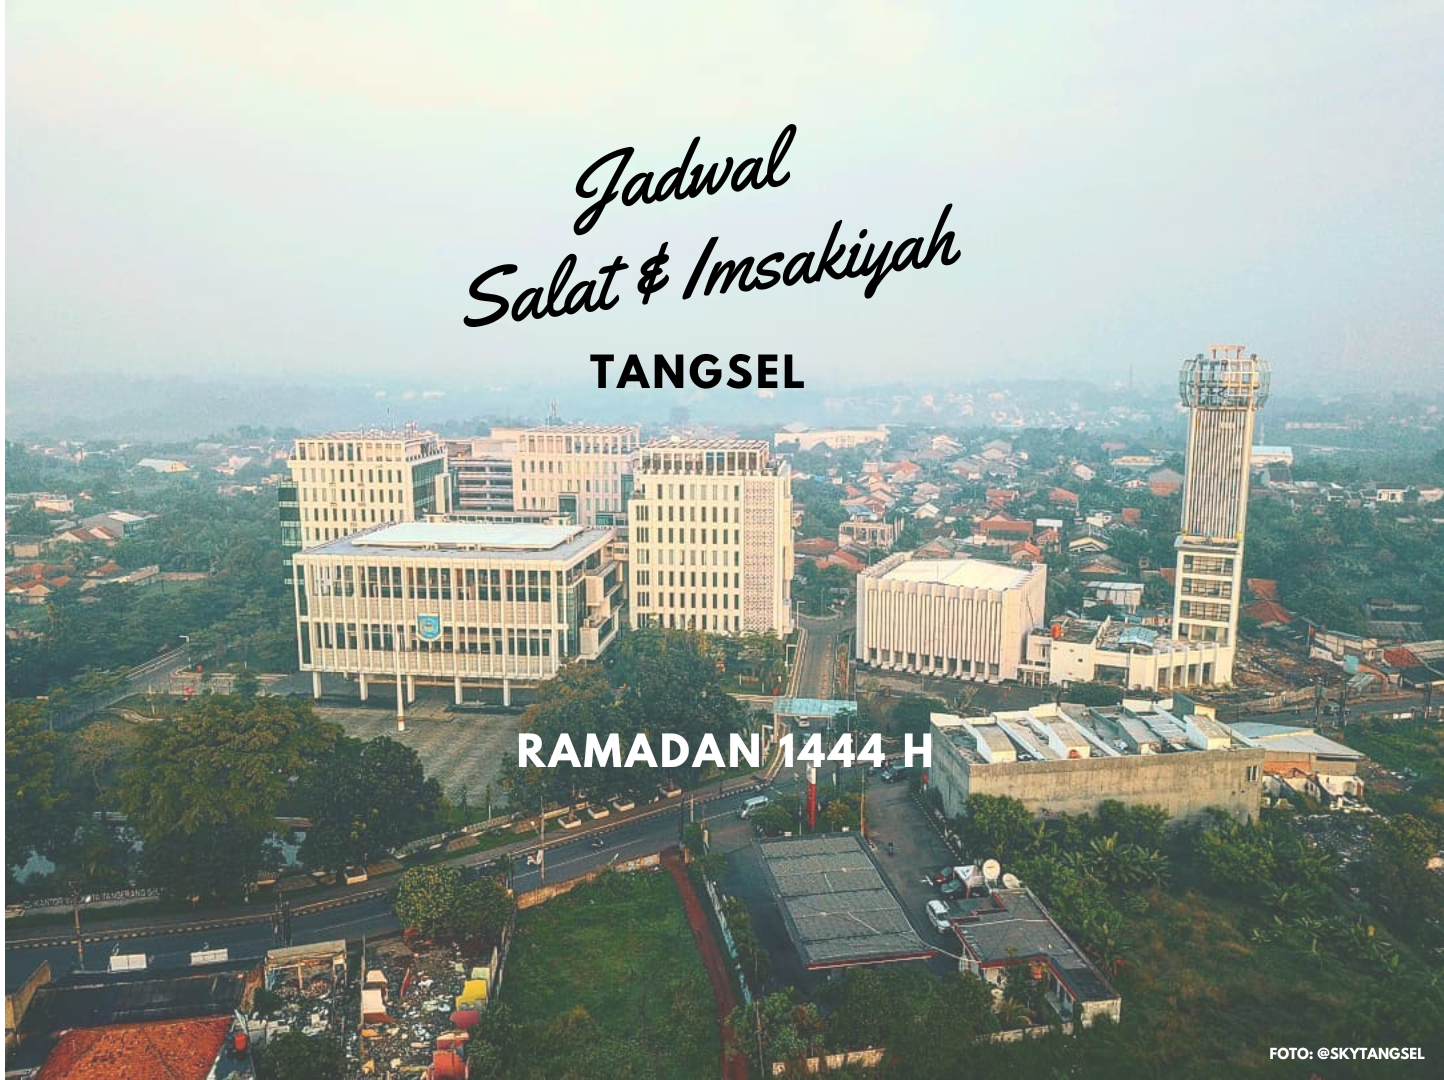 Jadwal Salat dan Imsakiyah Tangerang Selatan (Tangsel) Ramadan 1444 Hijriah